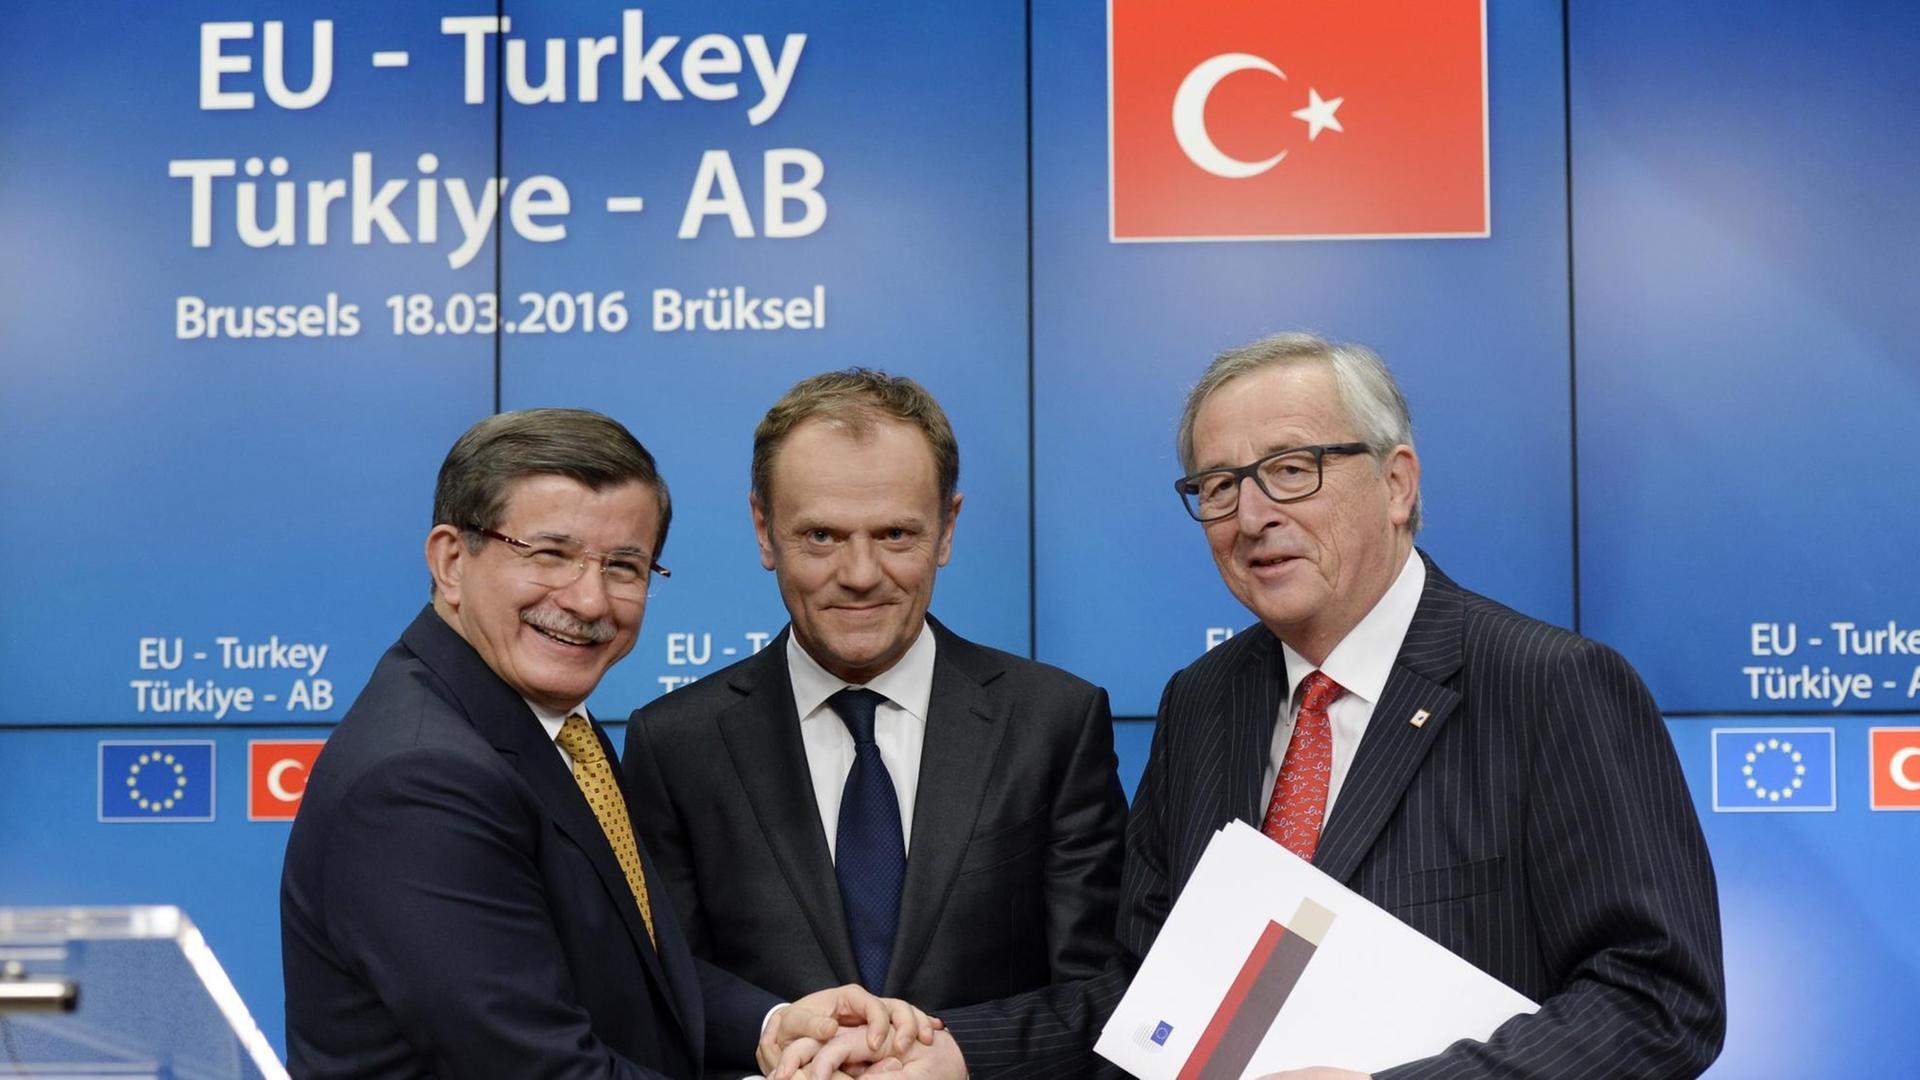 Der türkische Ministerpräsident Ahmet Davutoglu, EU-Präsident Donald Tusk (Mitte) und Präsident der Europäischen Union Jean-Claude Juncker (Rechts) nach dem Gipfeltreffen der Europäischen Union im EU-Ratsgebäude in Brüssel.